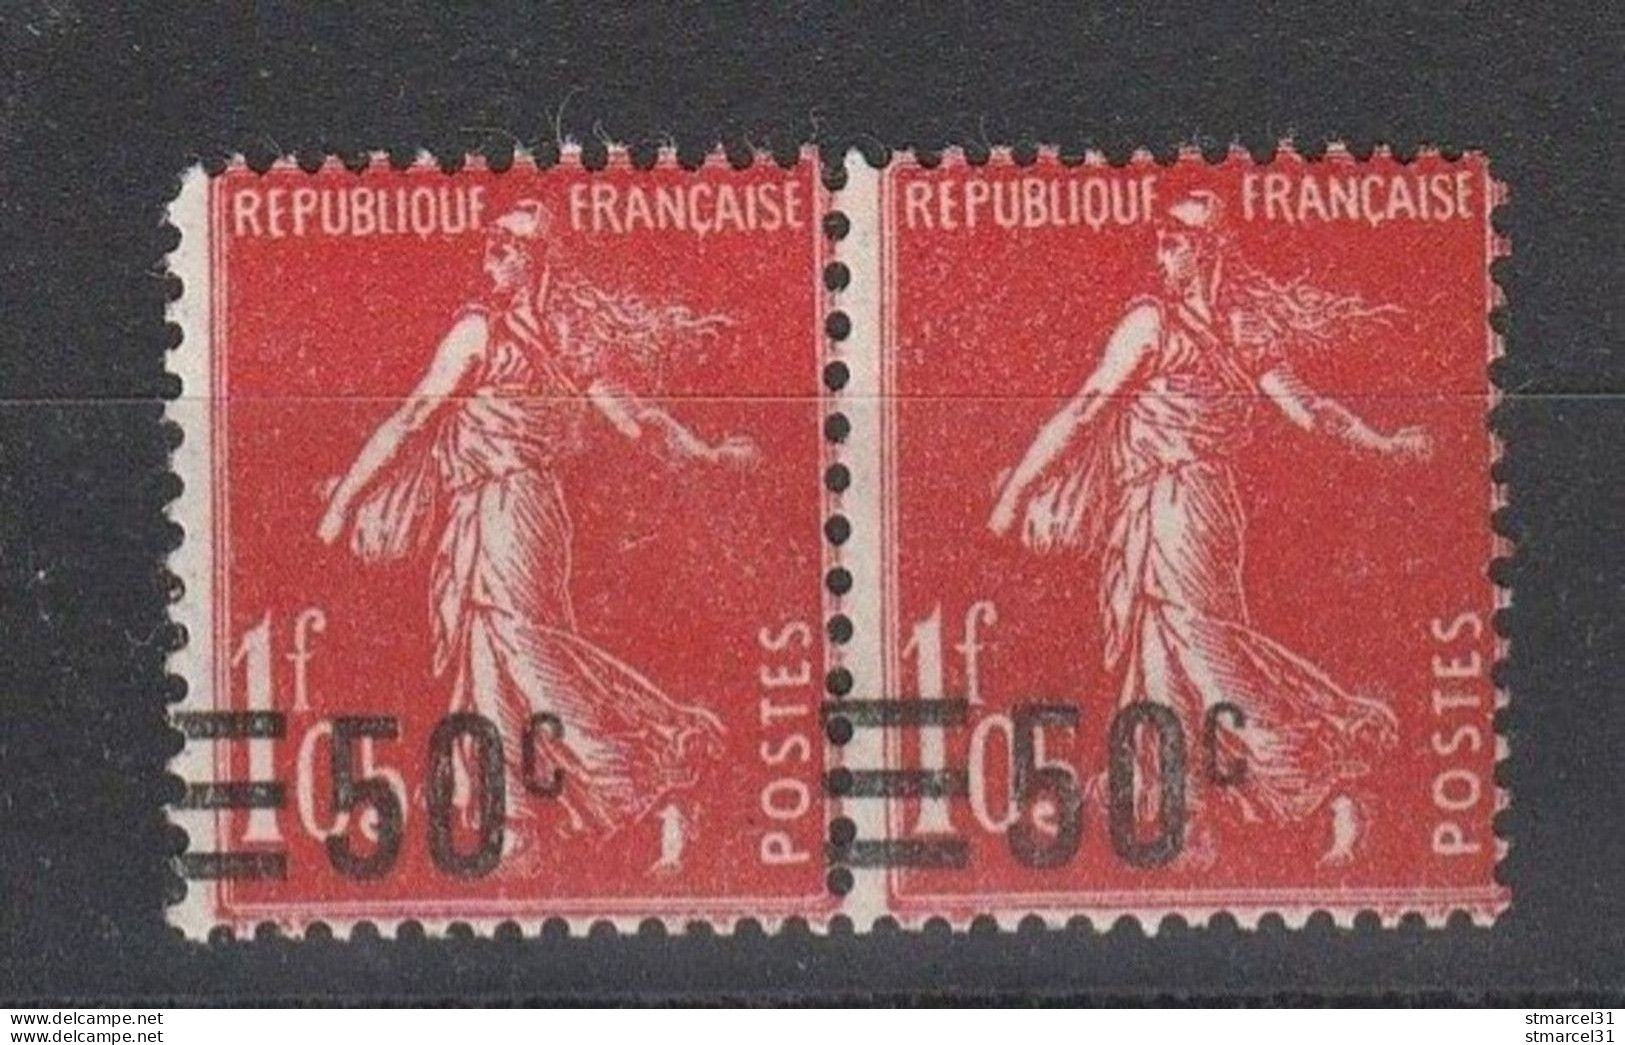 TRES RARE N°225c Surcharge VALEUR Sur VALEUR Avec Barres à Cheval +VAR TIMBRE PETIT Neuf* TBE Cote> >220€ - Unused Stamps